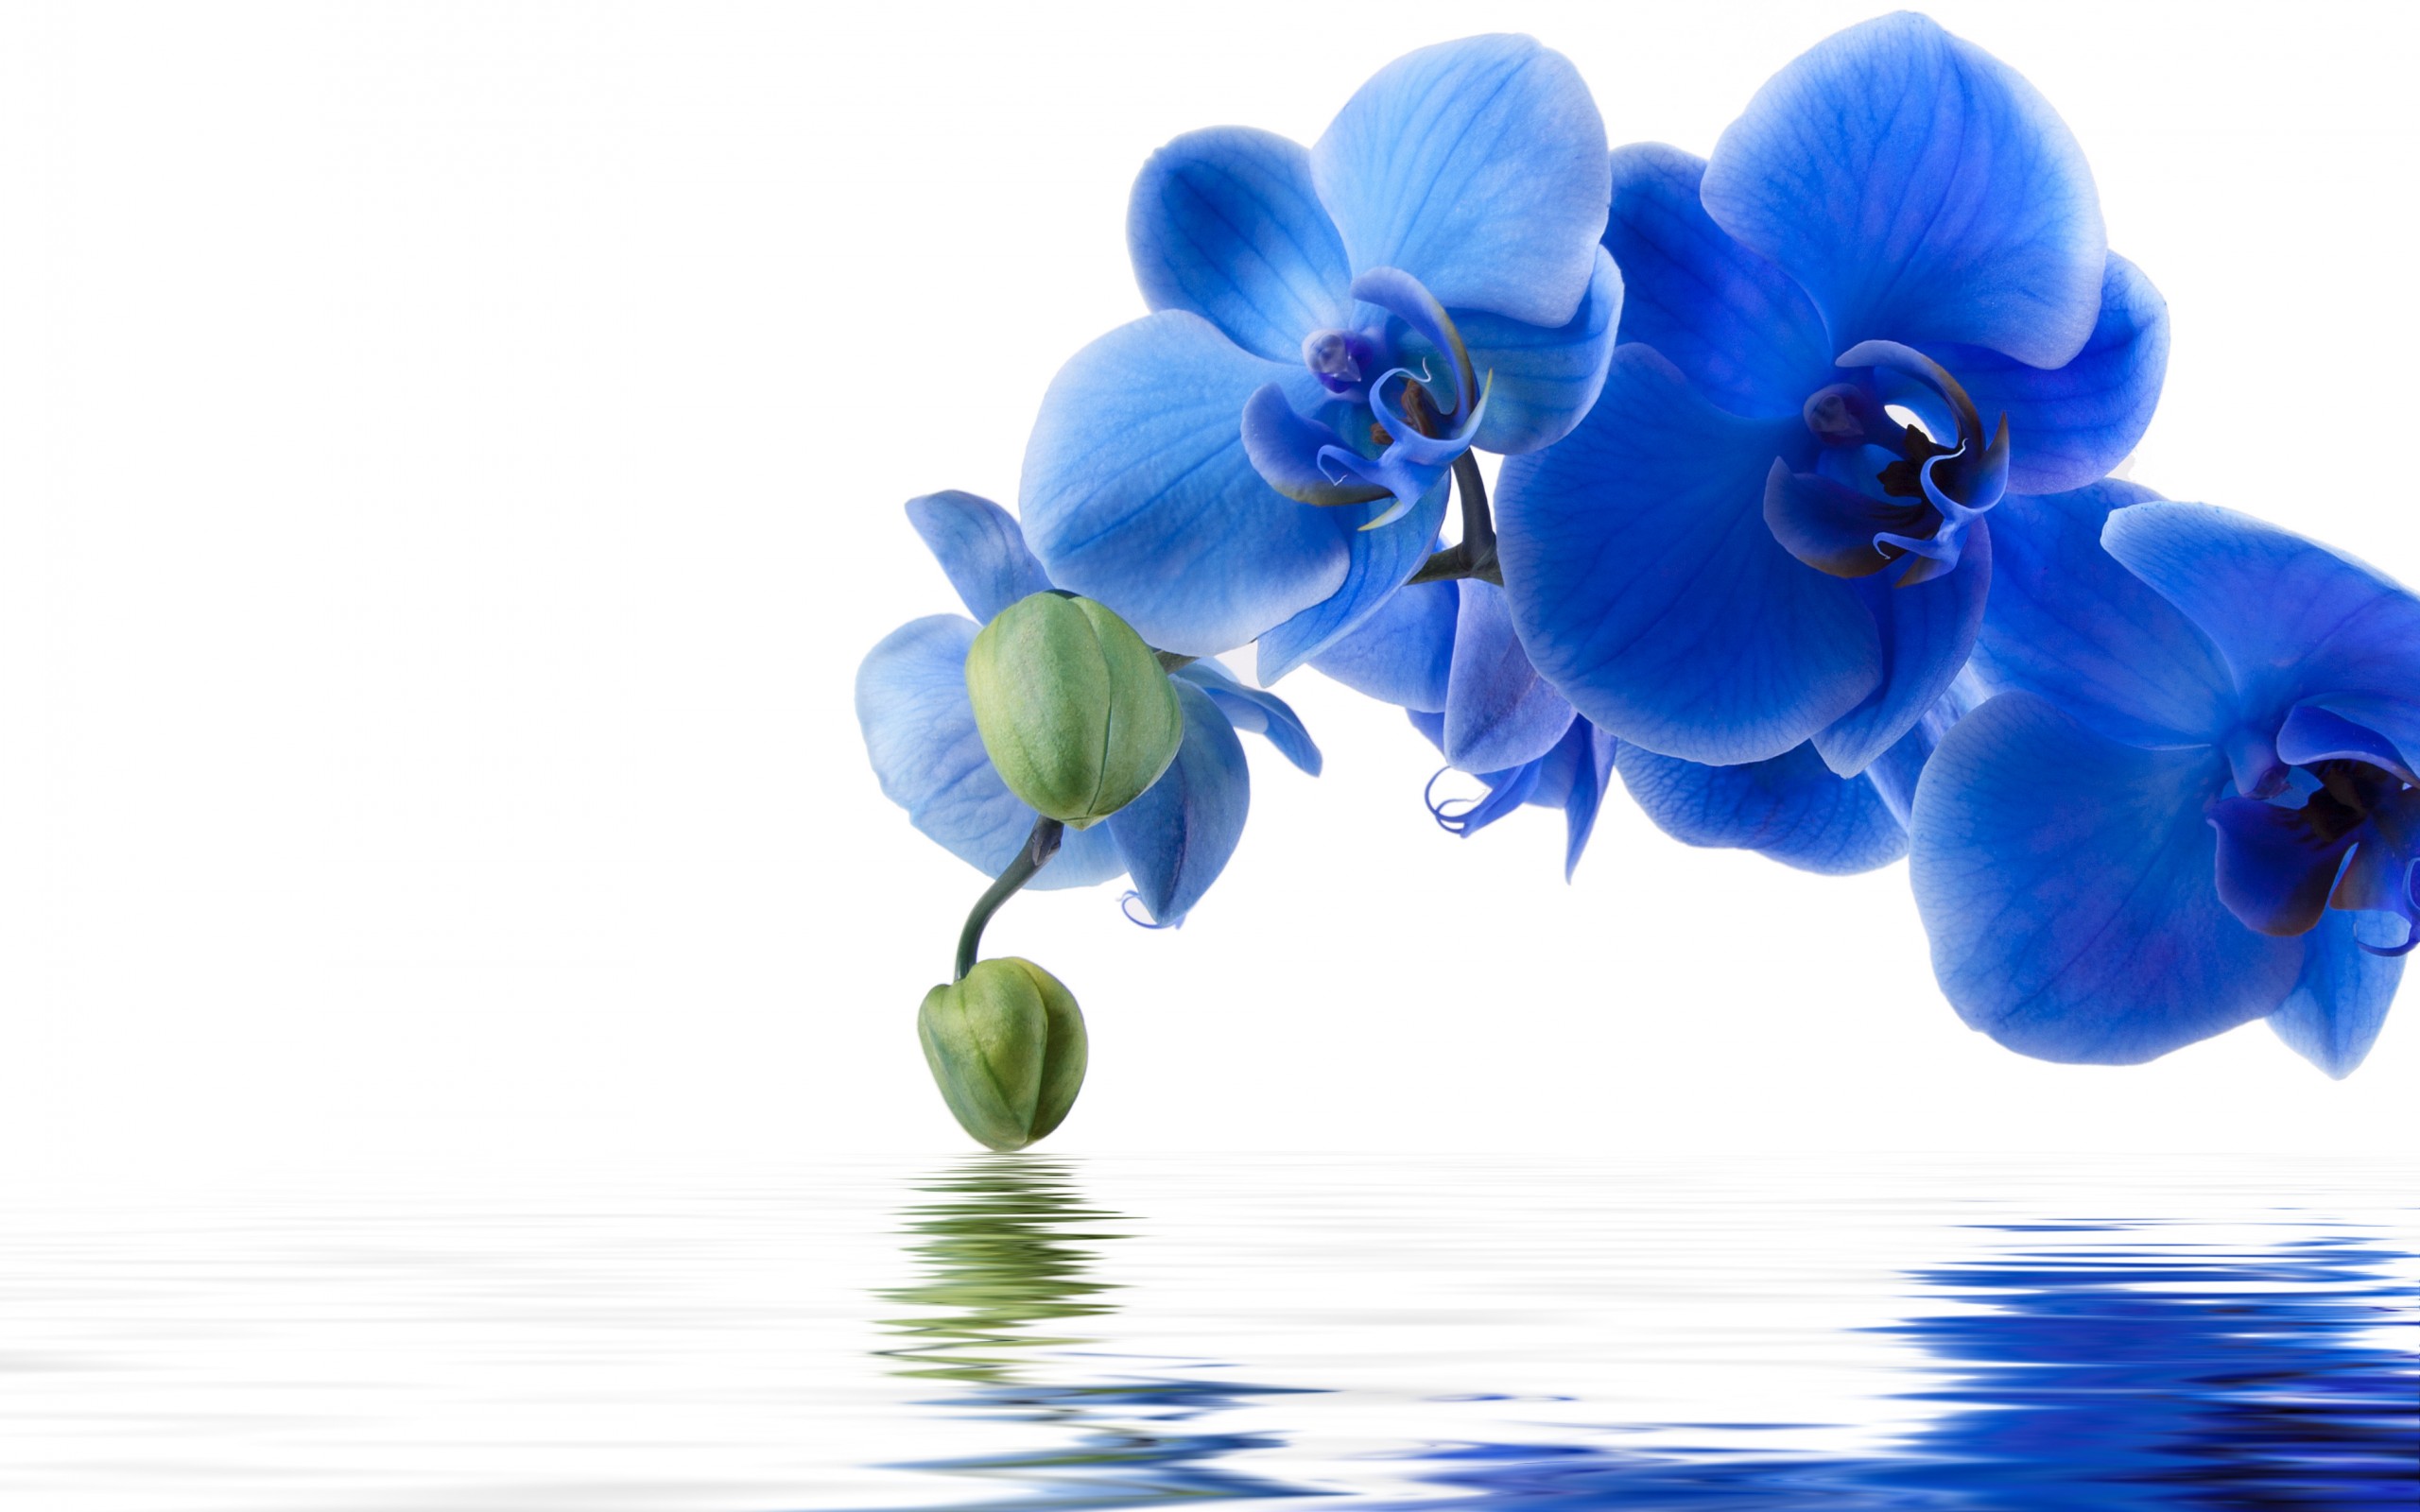 Скачать обои бесплатно Отражение, Цветок, Орхидея, Земля/природа, Синий Цветок, Флауэрсы картинка на рабочий стол ПК